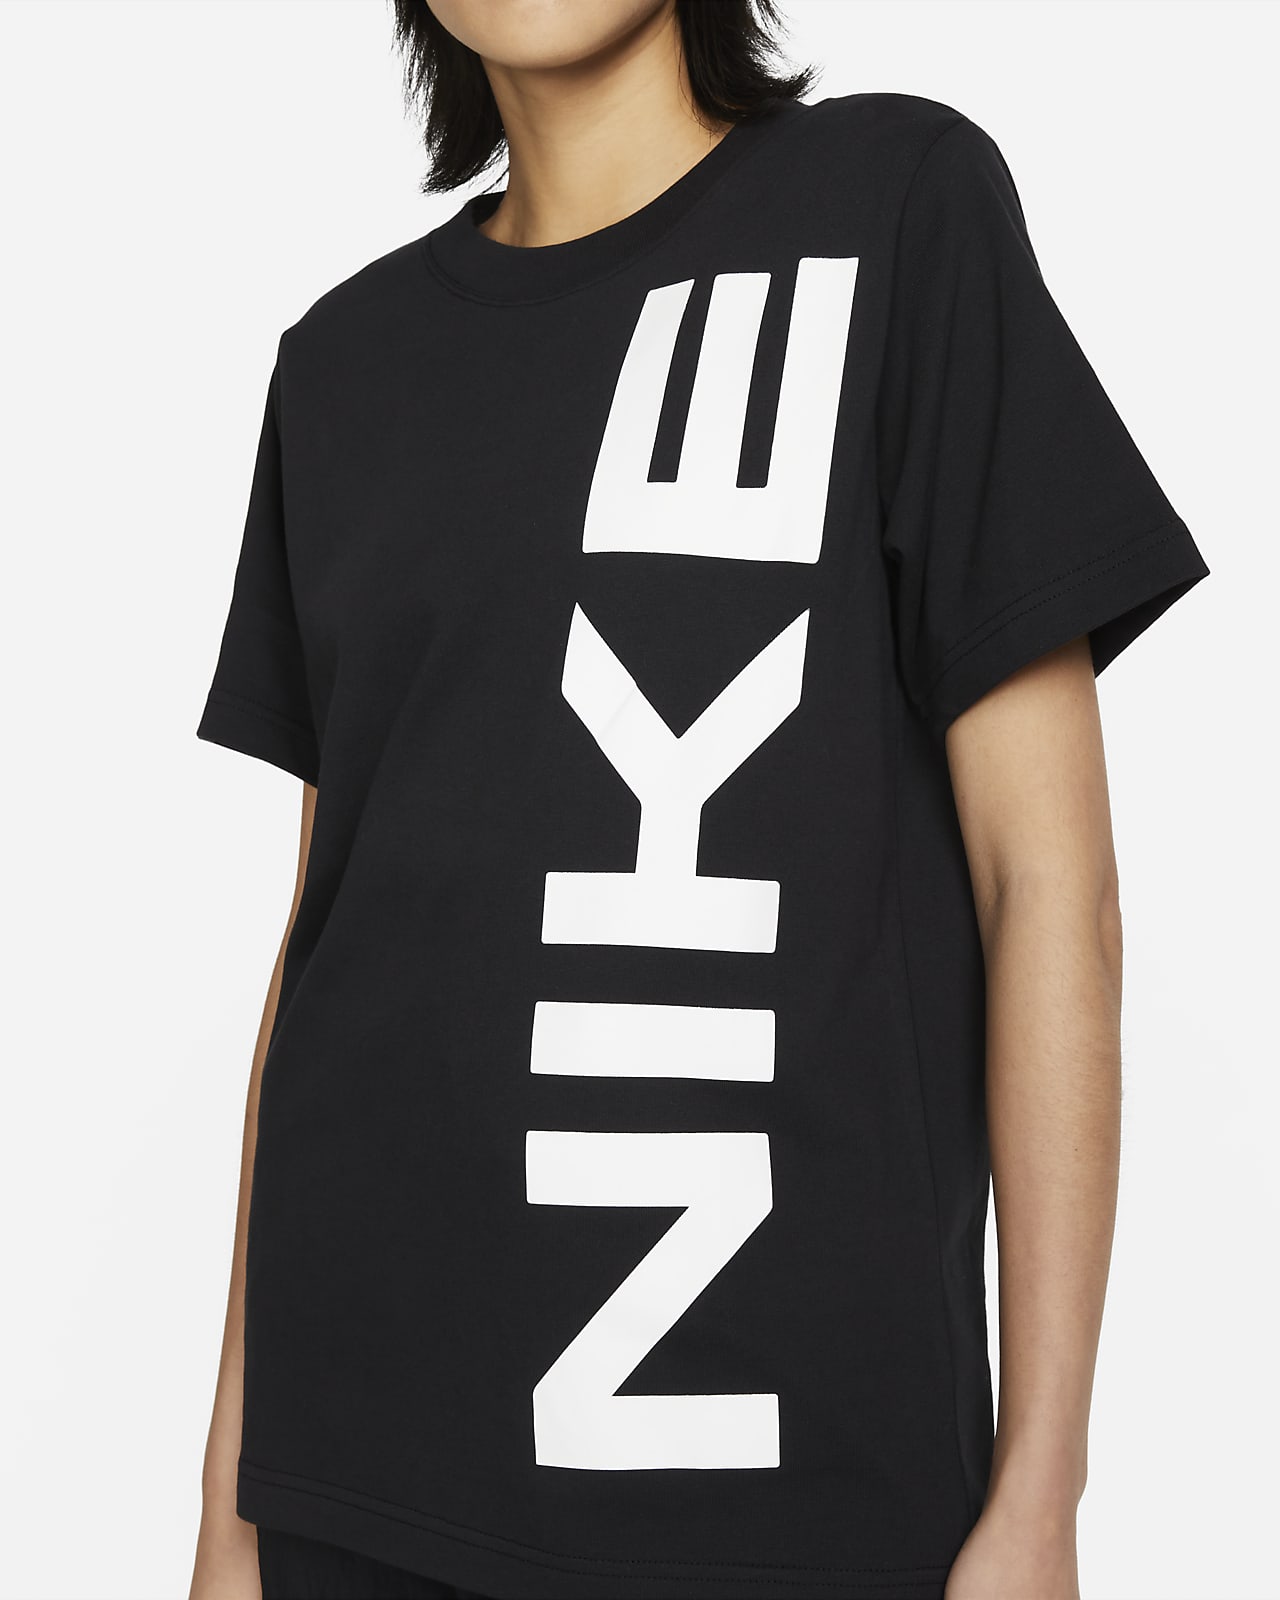 NIKE AIR ナイキ エアー Tシャツ ハーフパンツ ブラック ホワイト